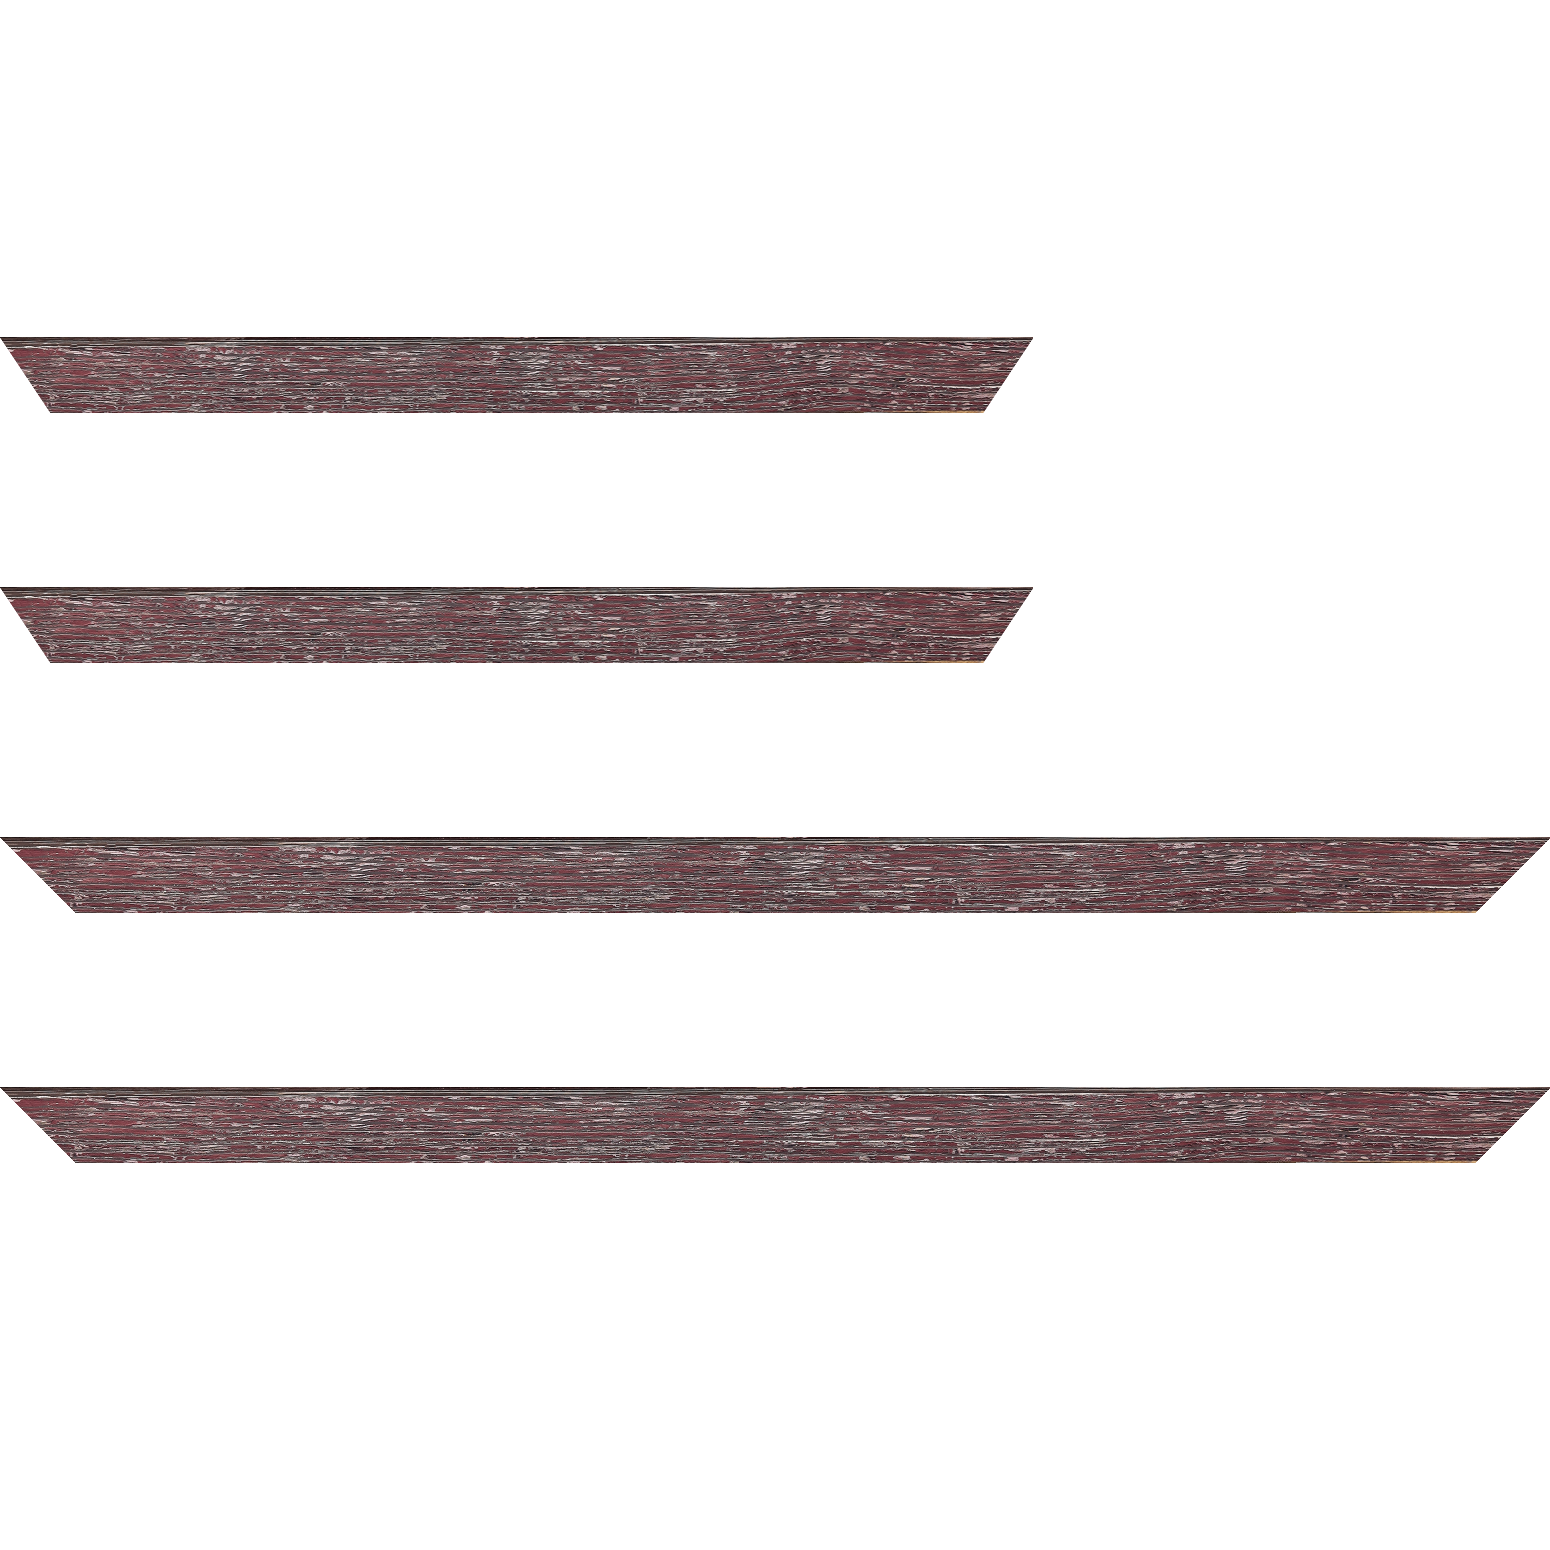 Baguette bois profil arrondi en pente plongeant largeur 2.4cm couleur framboise finition veinée, reflet argenté - 18x24